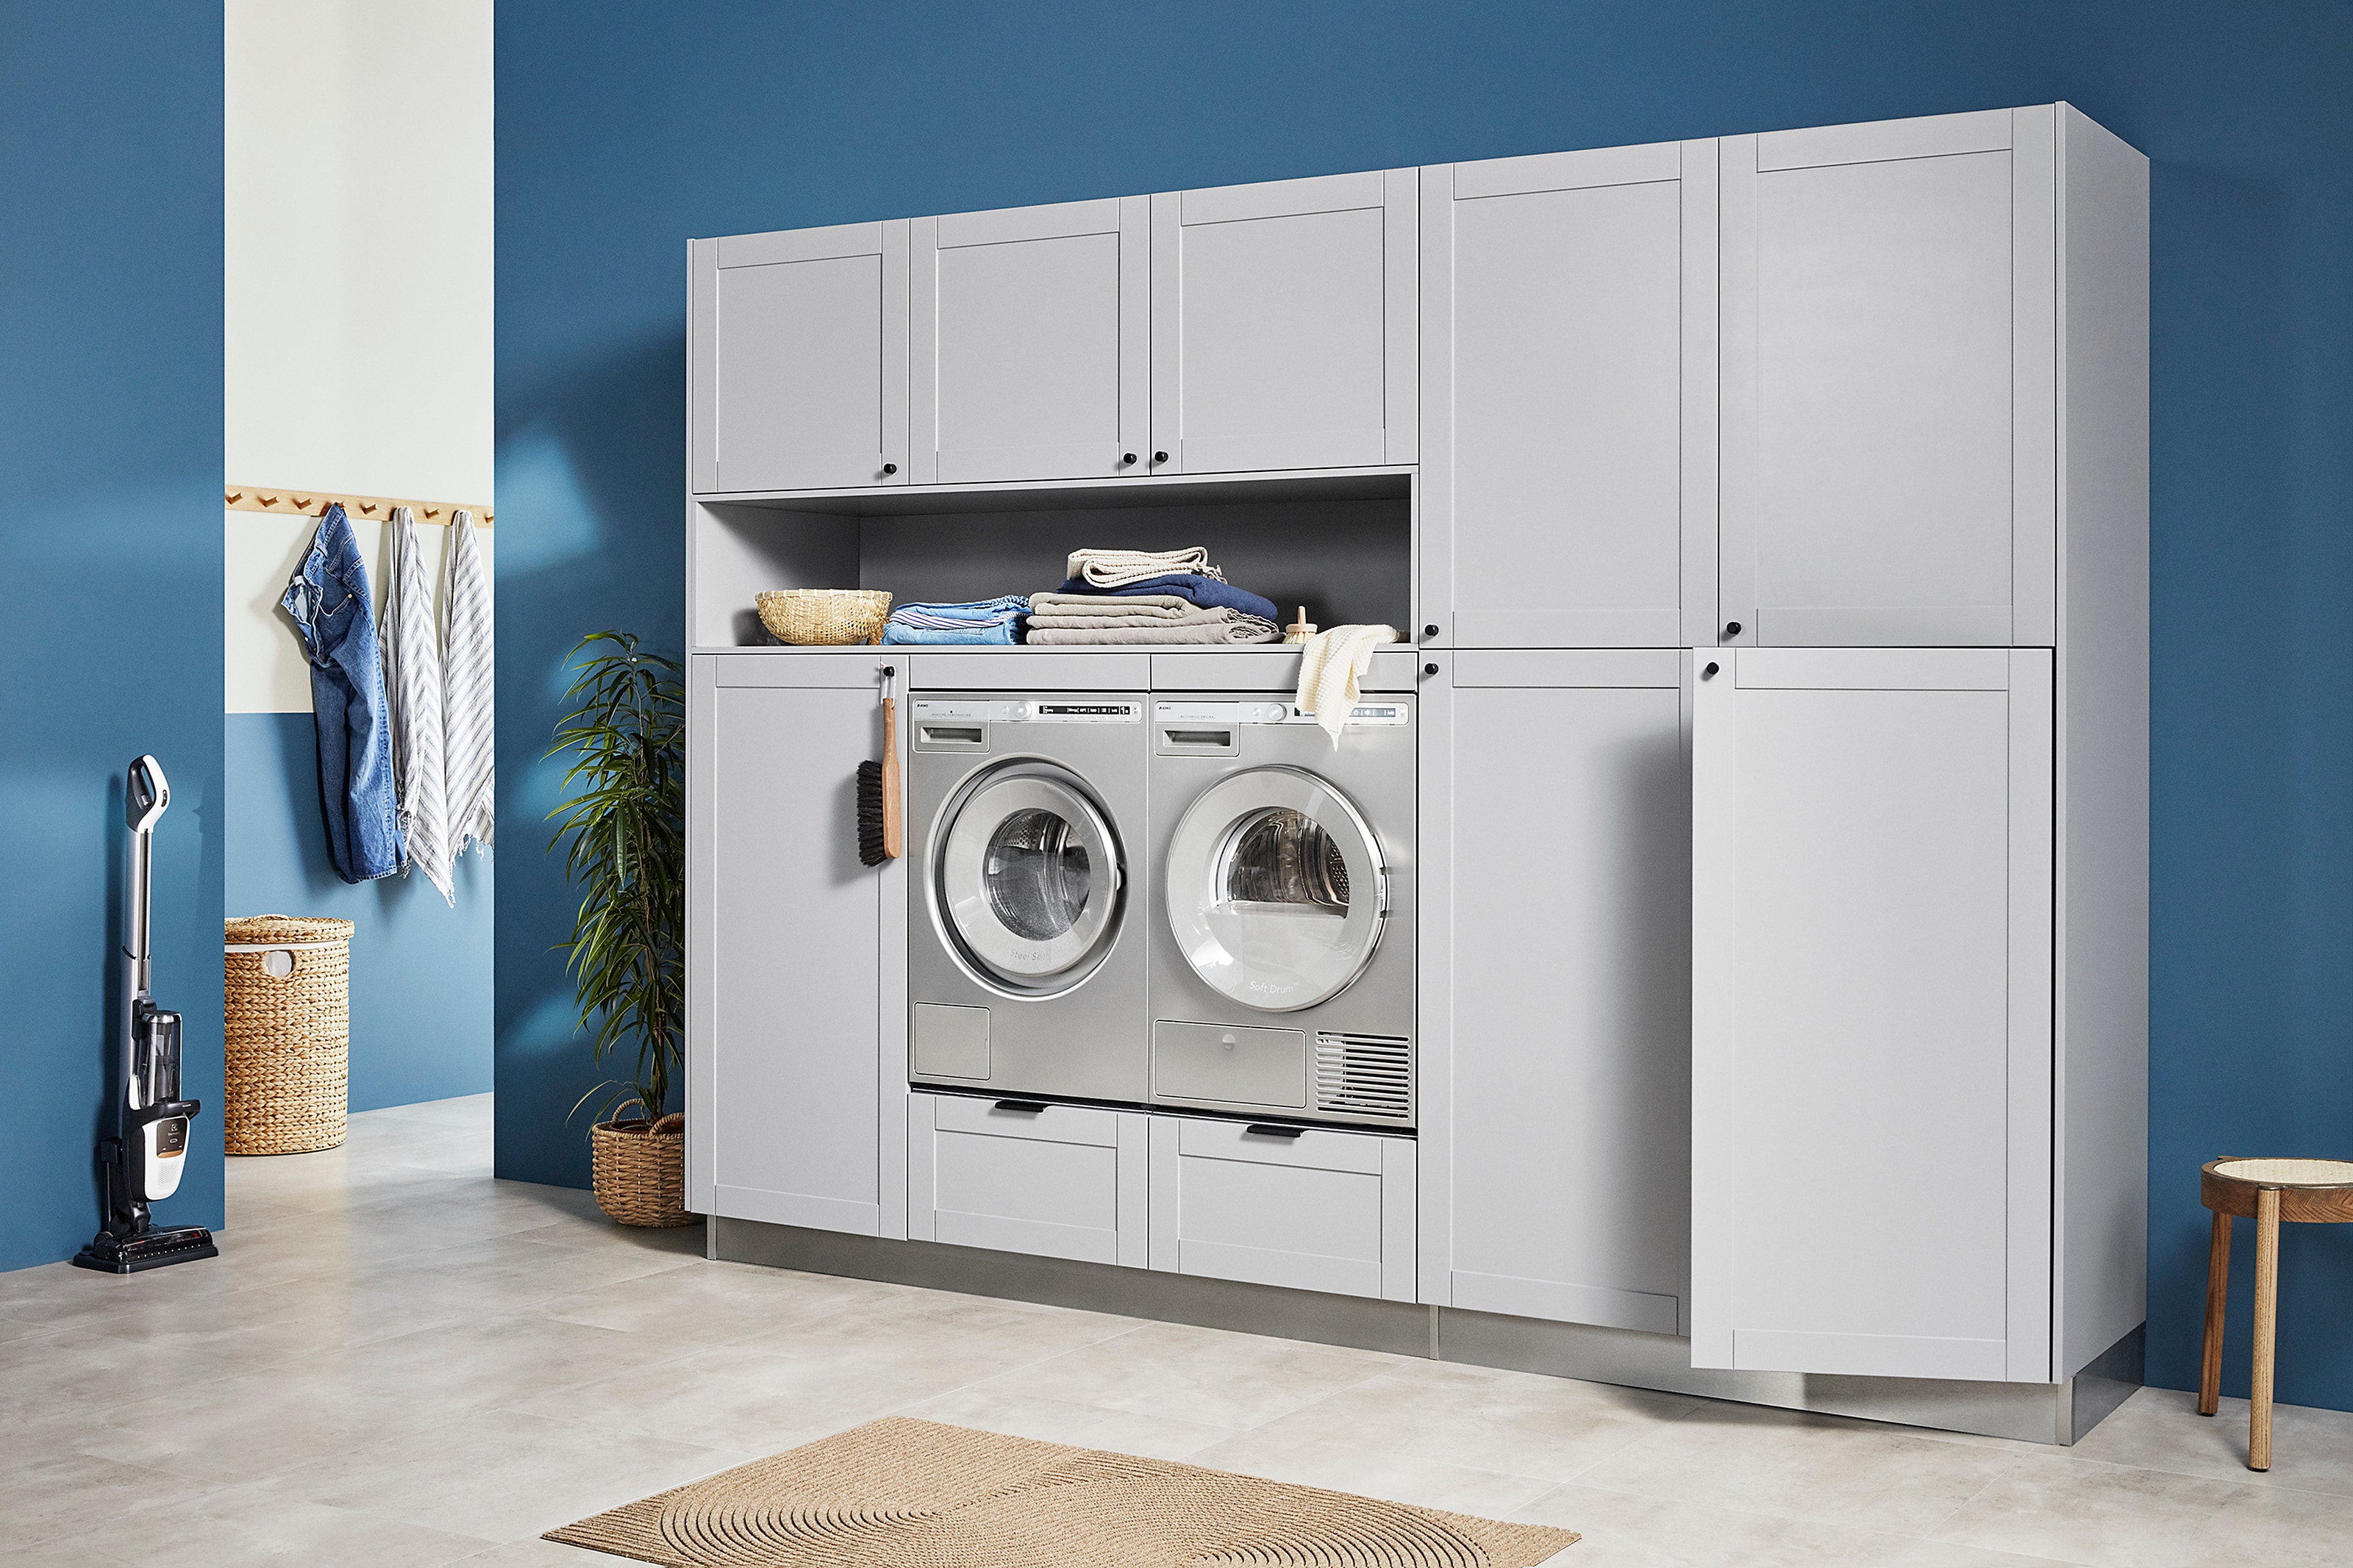 Vaskemaskiner - artikler og guider | Elgiganten